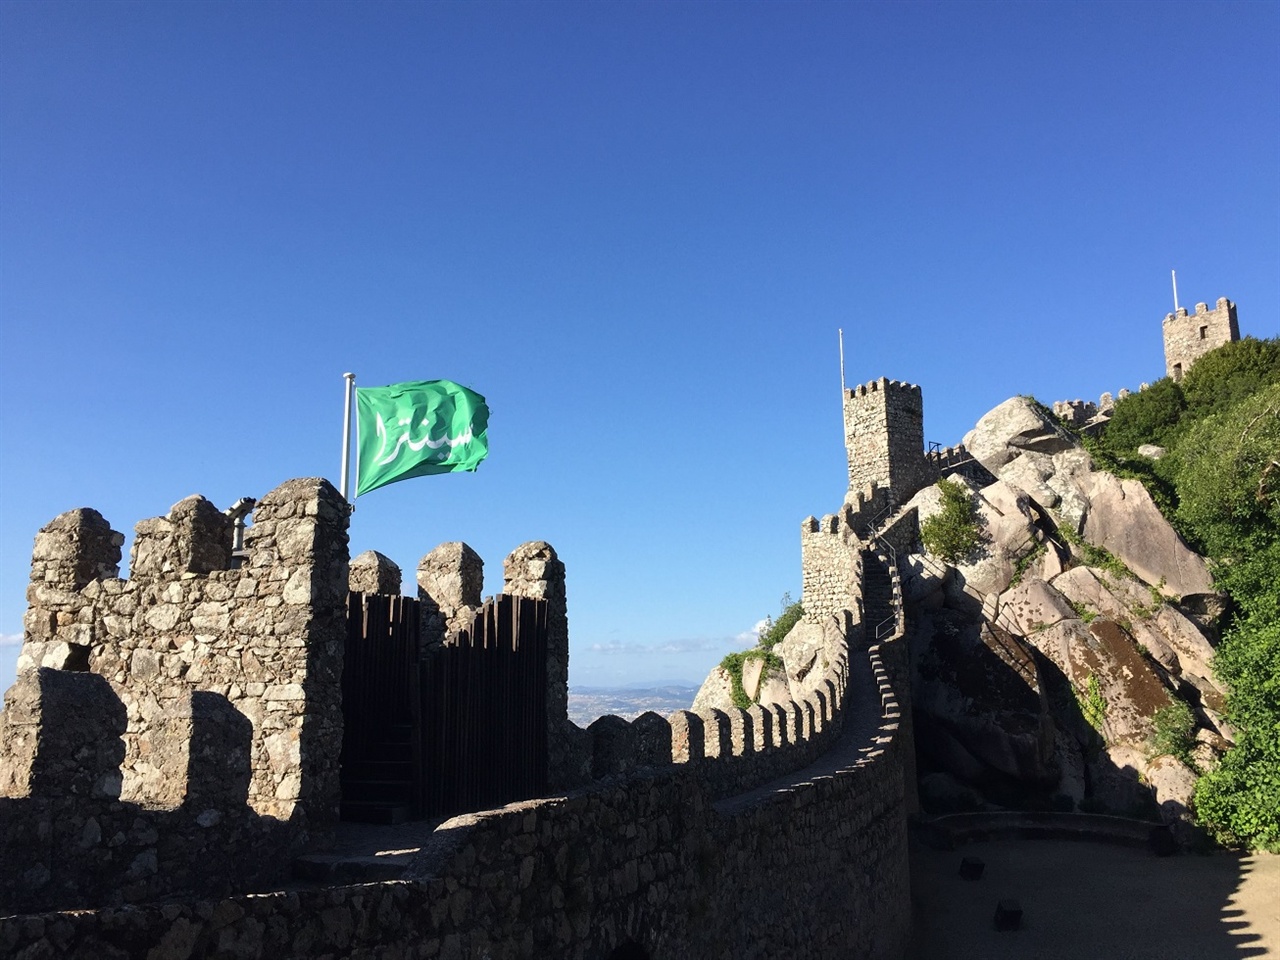 아프리카의 북부에서 이베리아 반도로 건너와 스페인과 포르투갈의 곳곳에서 번성했던, 무어인의 흔적이네요. 기념품 판매점에 물어보니, 녹색으로 펄럭이는 깃발에는 아랍어로 '신트라'라고 쓰여 있다고 해요. 